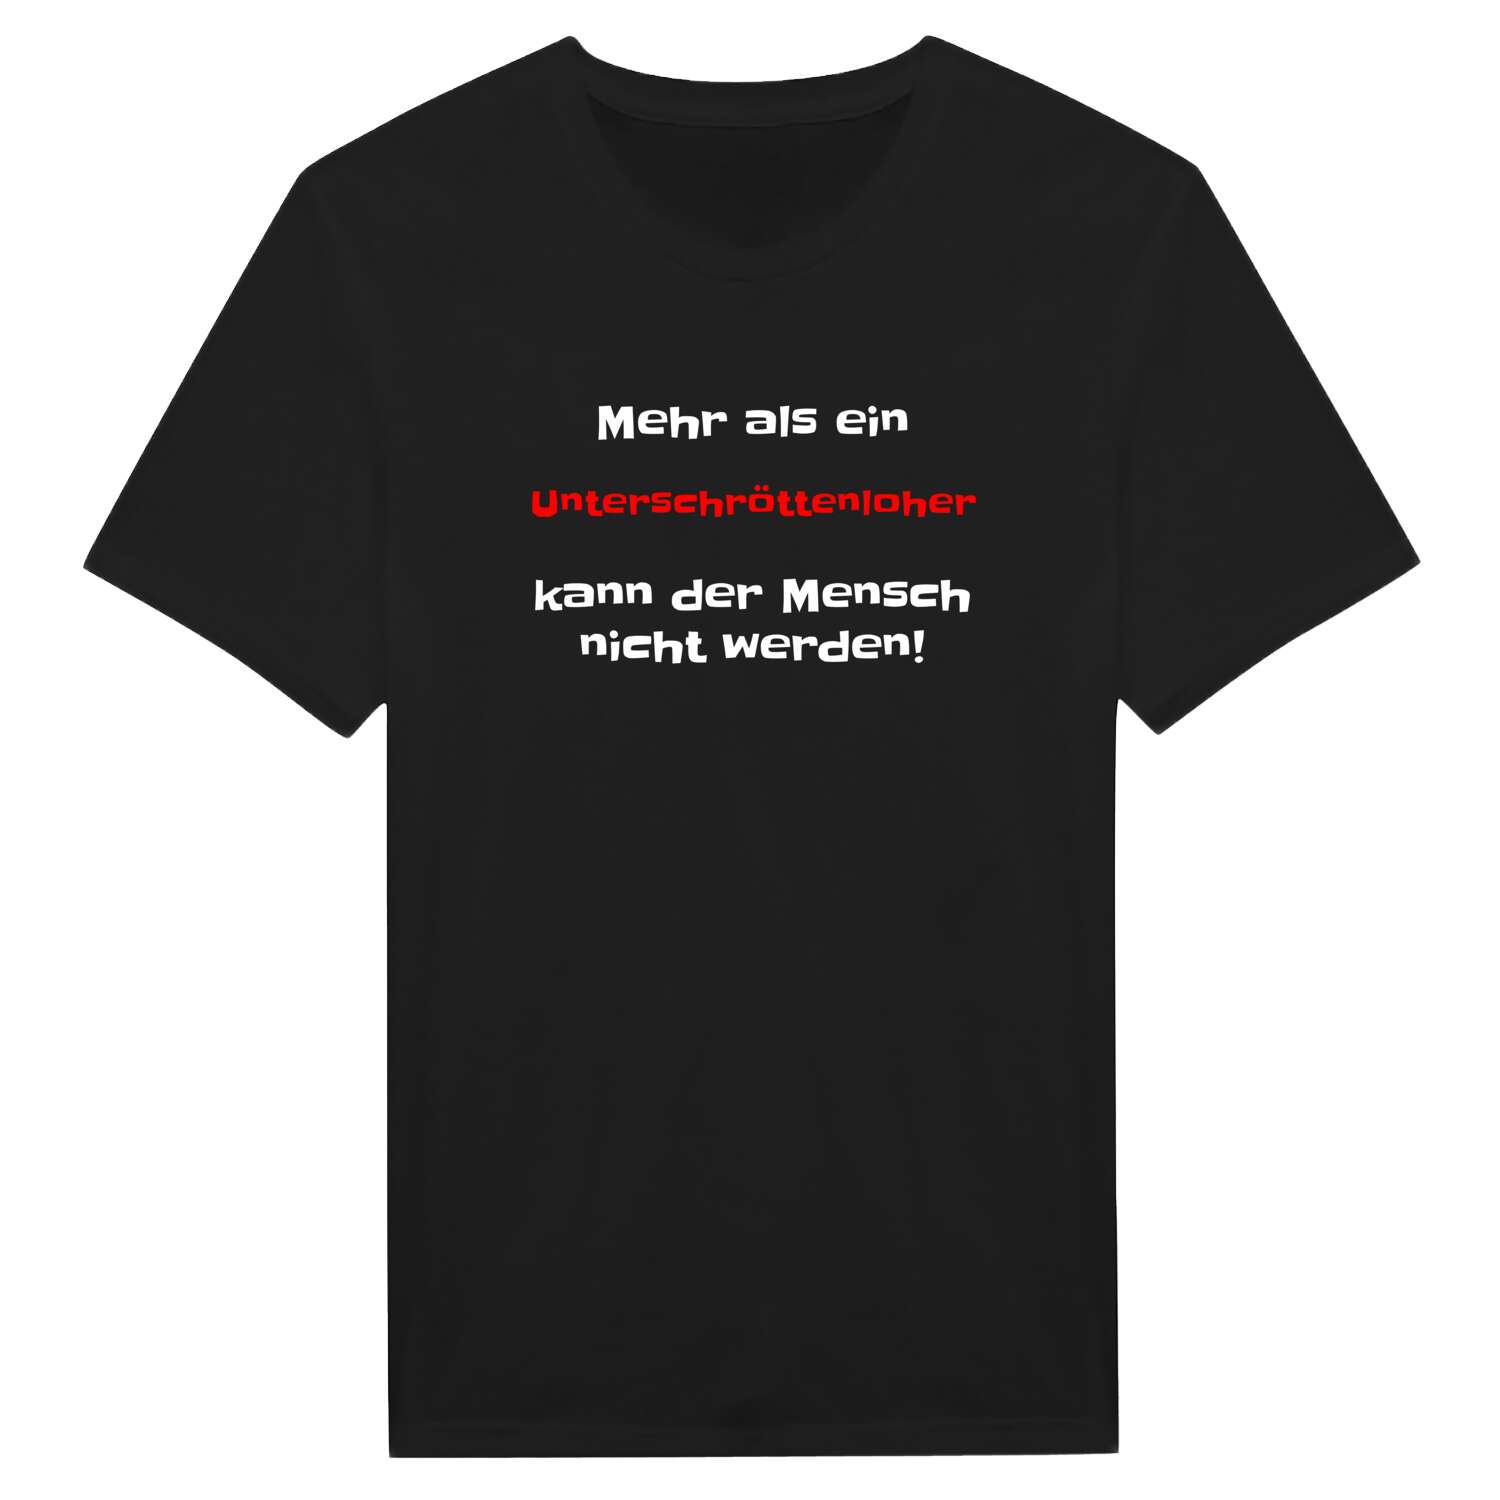 Unterschröttenloh T-Shirt »Mehr als ein«